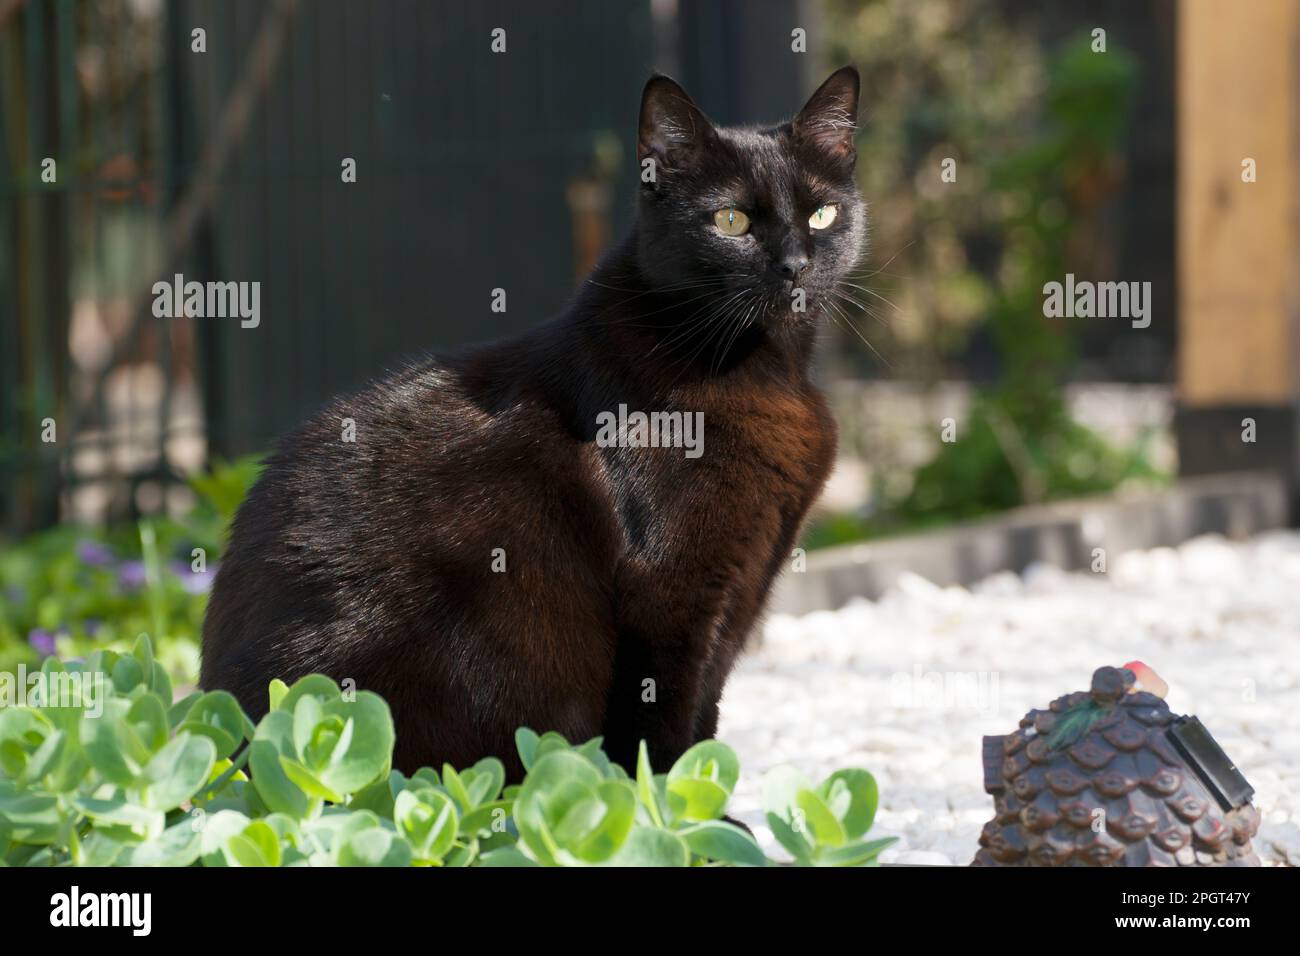 Grazioso gatto nero in piedi in giardino godendo di una bella giornata di primavera. Pelliccia nera liscia e setosa che splende al sole. Foto Stock